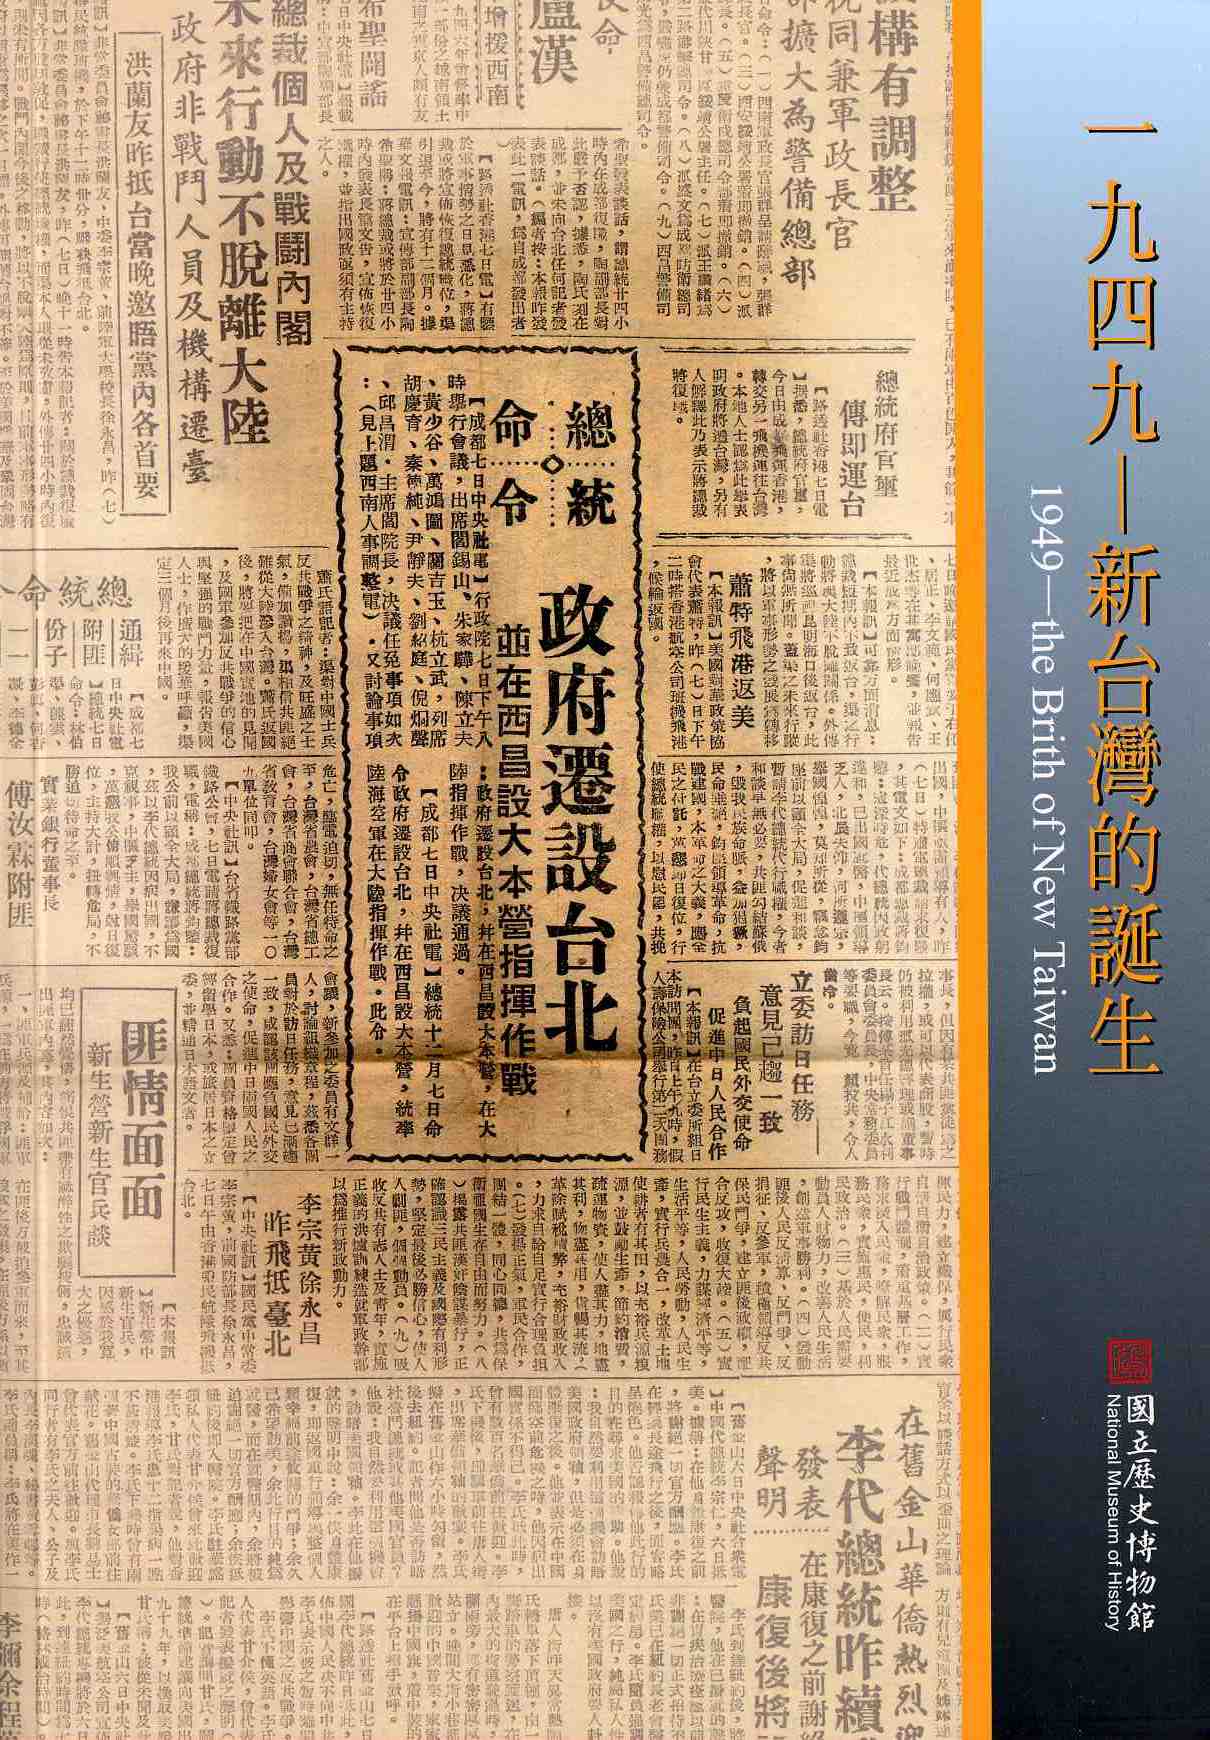 1949-新台灣的誕生